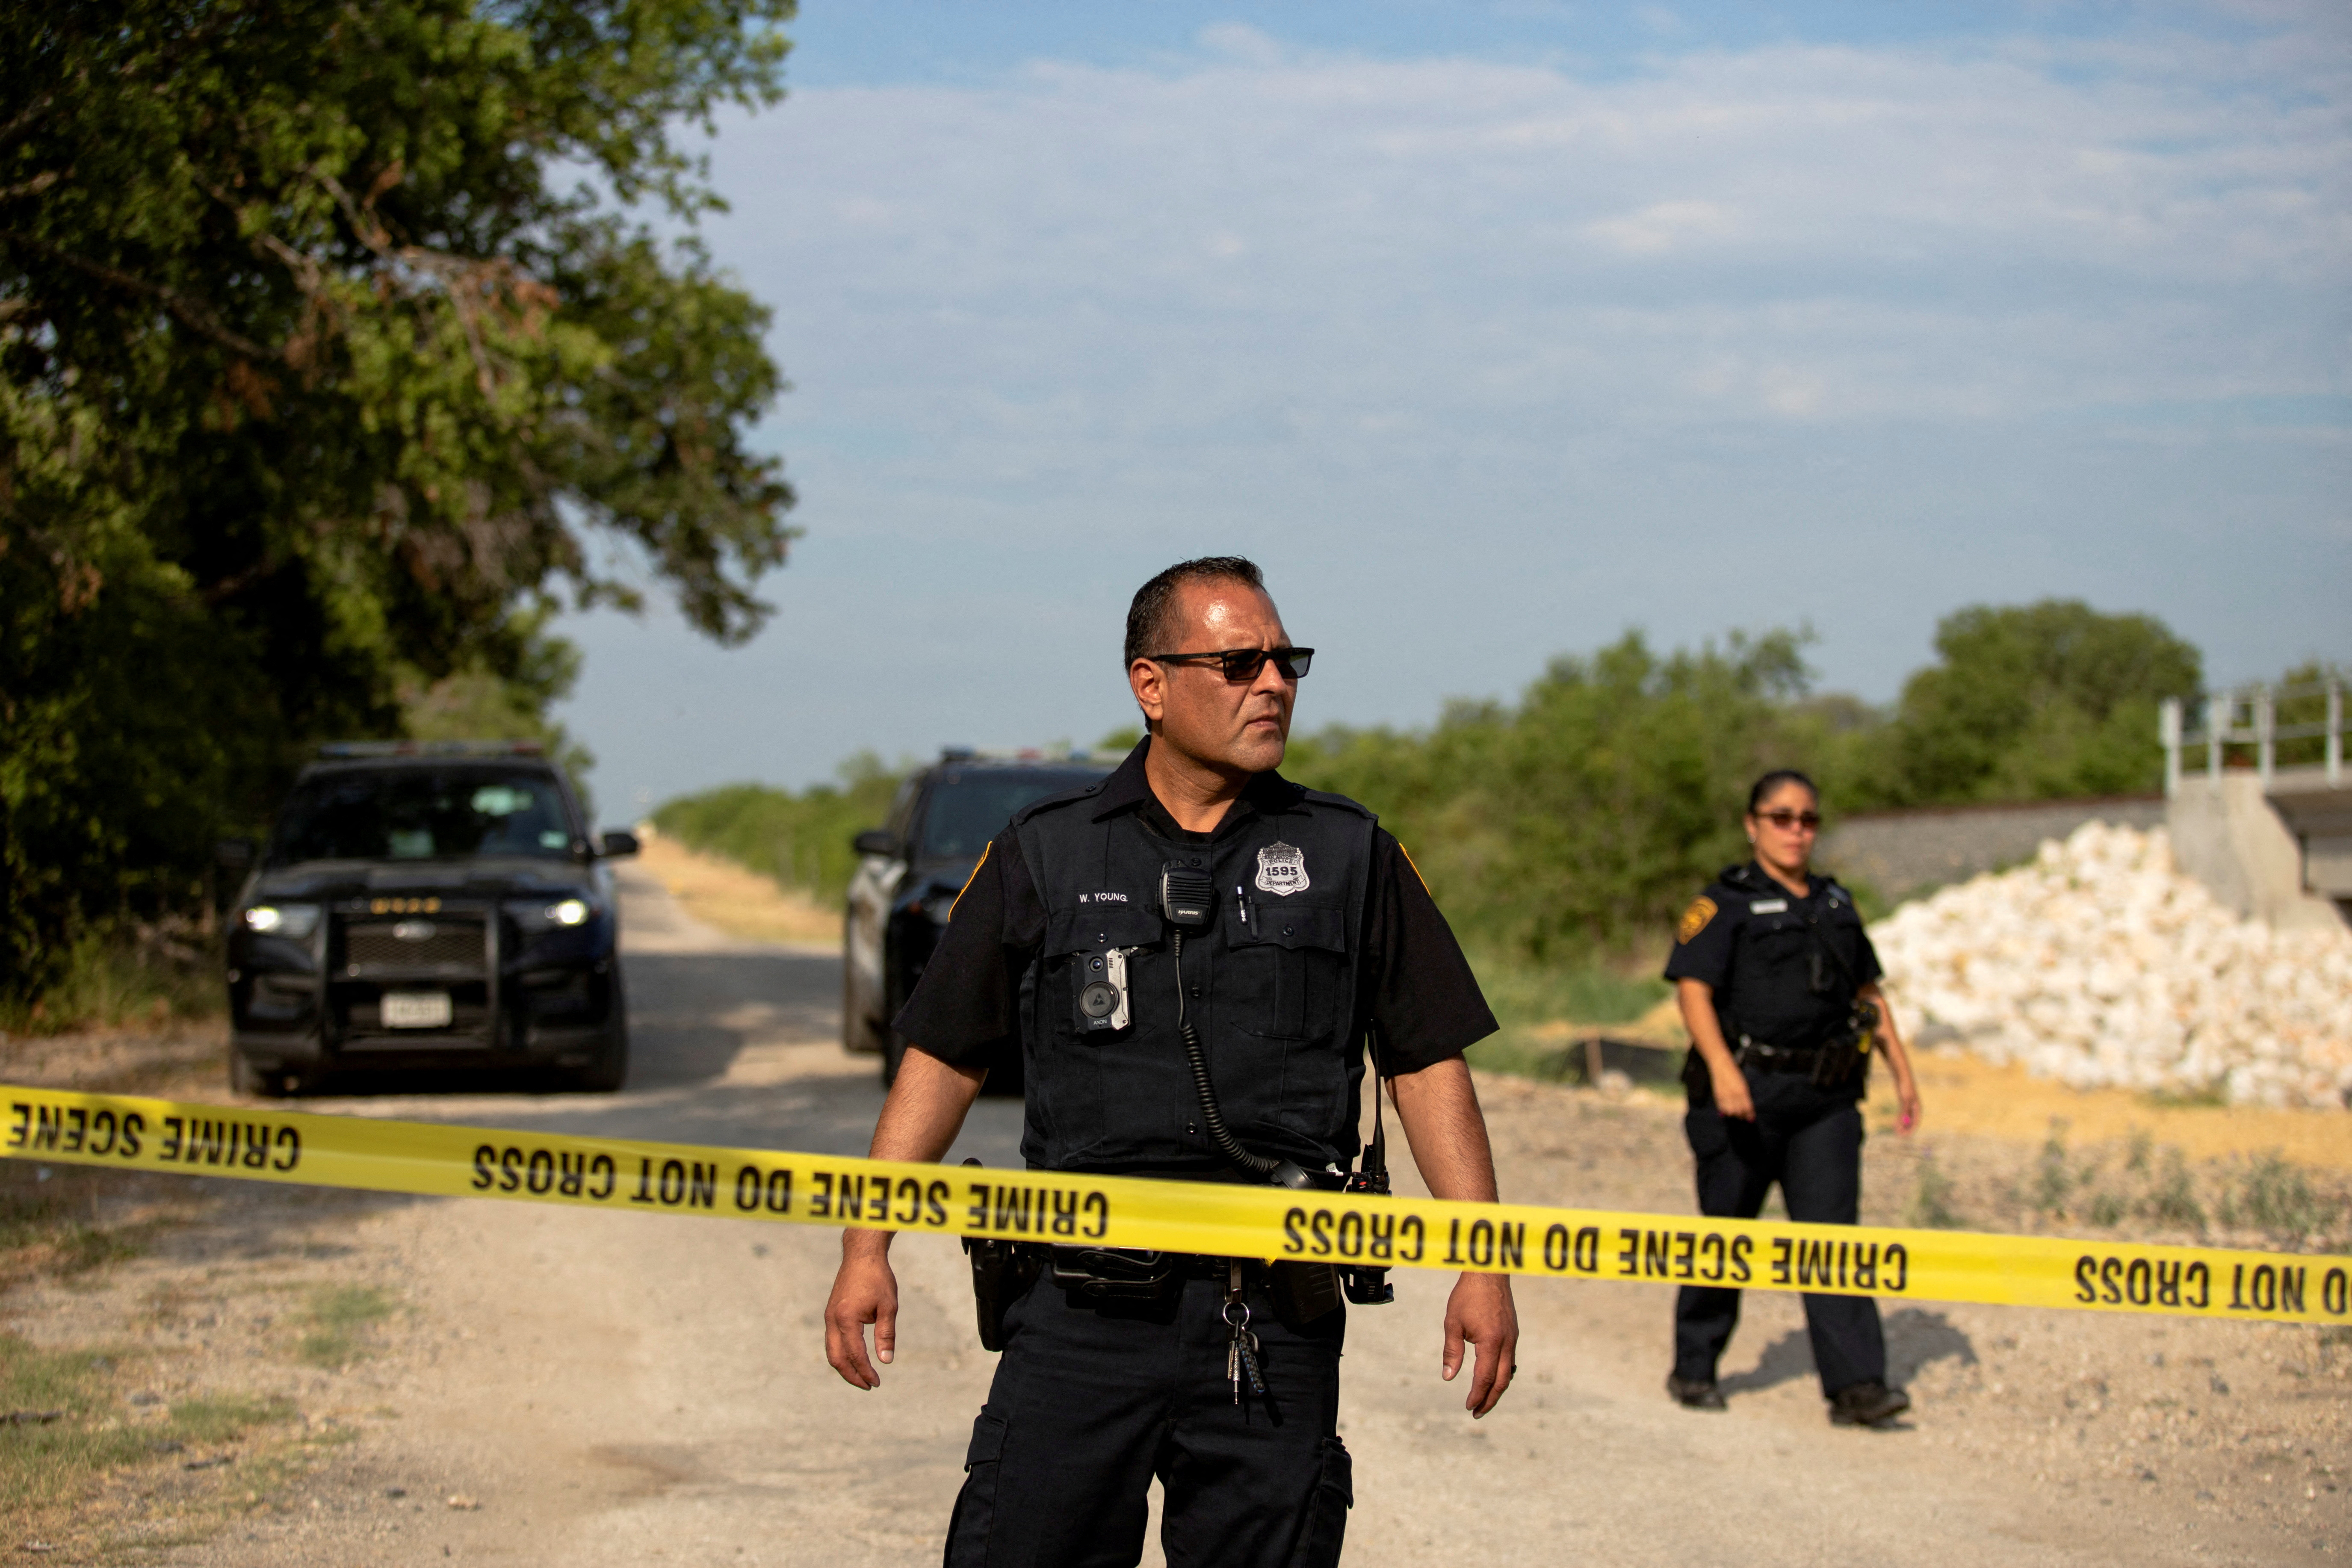 Agentes de la ley trabajan en la escena donde los migrantes fueron encontrados muertos dentro de un camión con remolque en San Antonio, Texas, EE.UU. 28 de junio de 2022. REUTERS/Kaylee Greenlee Beal